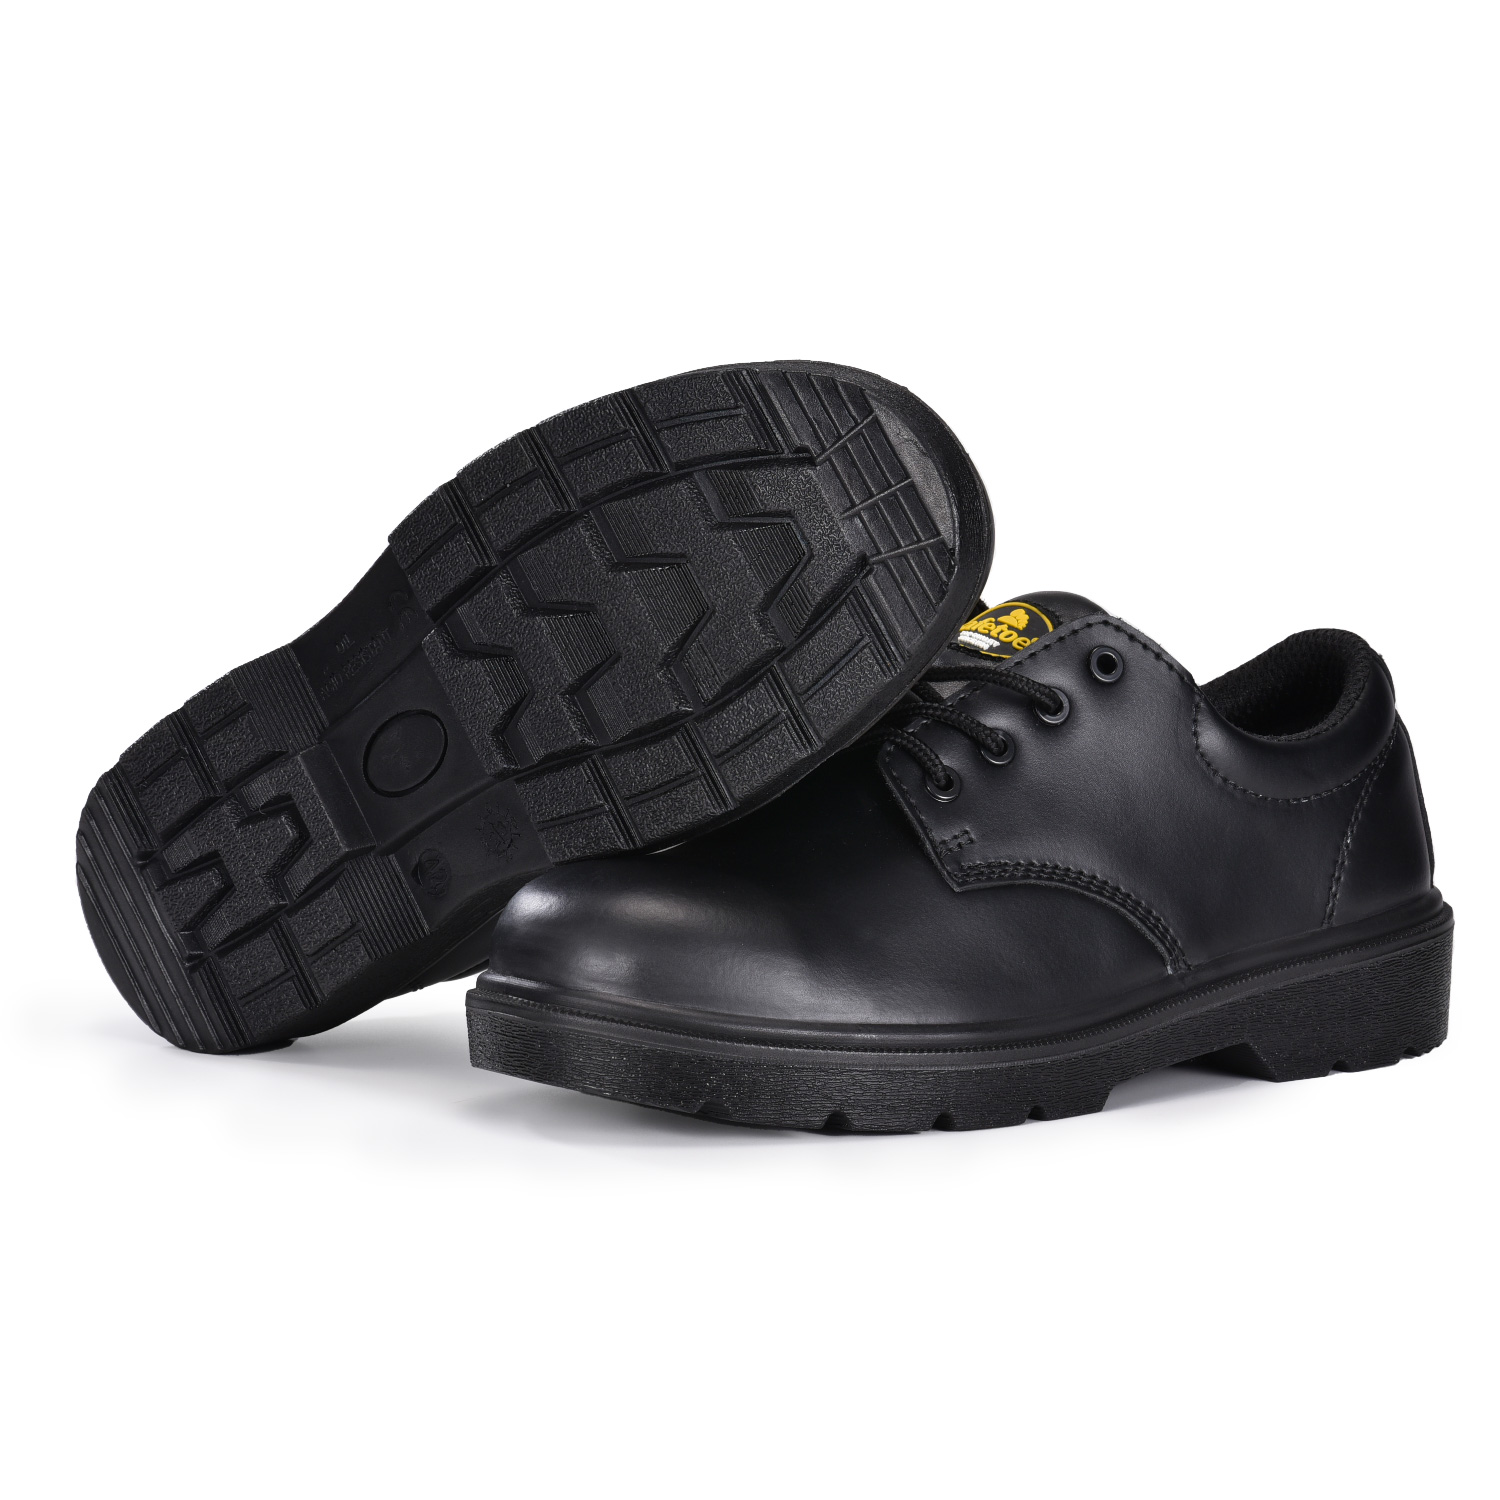 Chaussures de sécurité S3 pour ingénieur et gestionnaire avec embout composite et plaque intercalaire en Kevlar L-7144